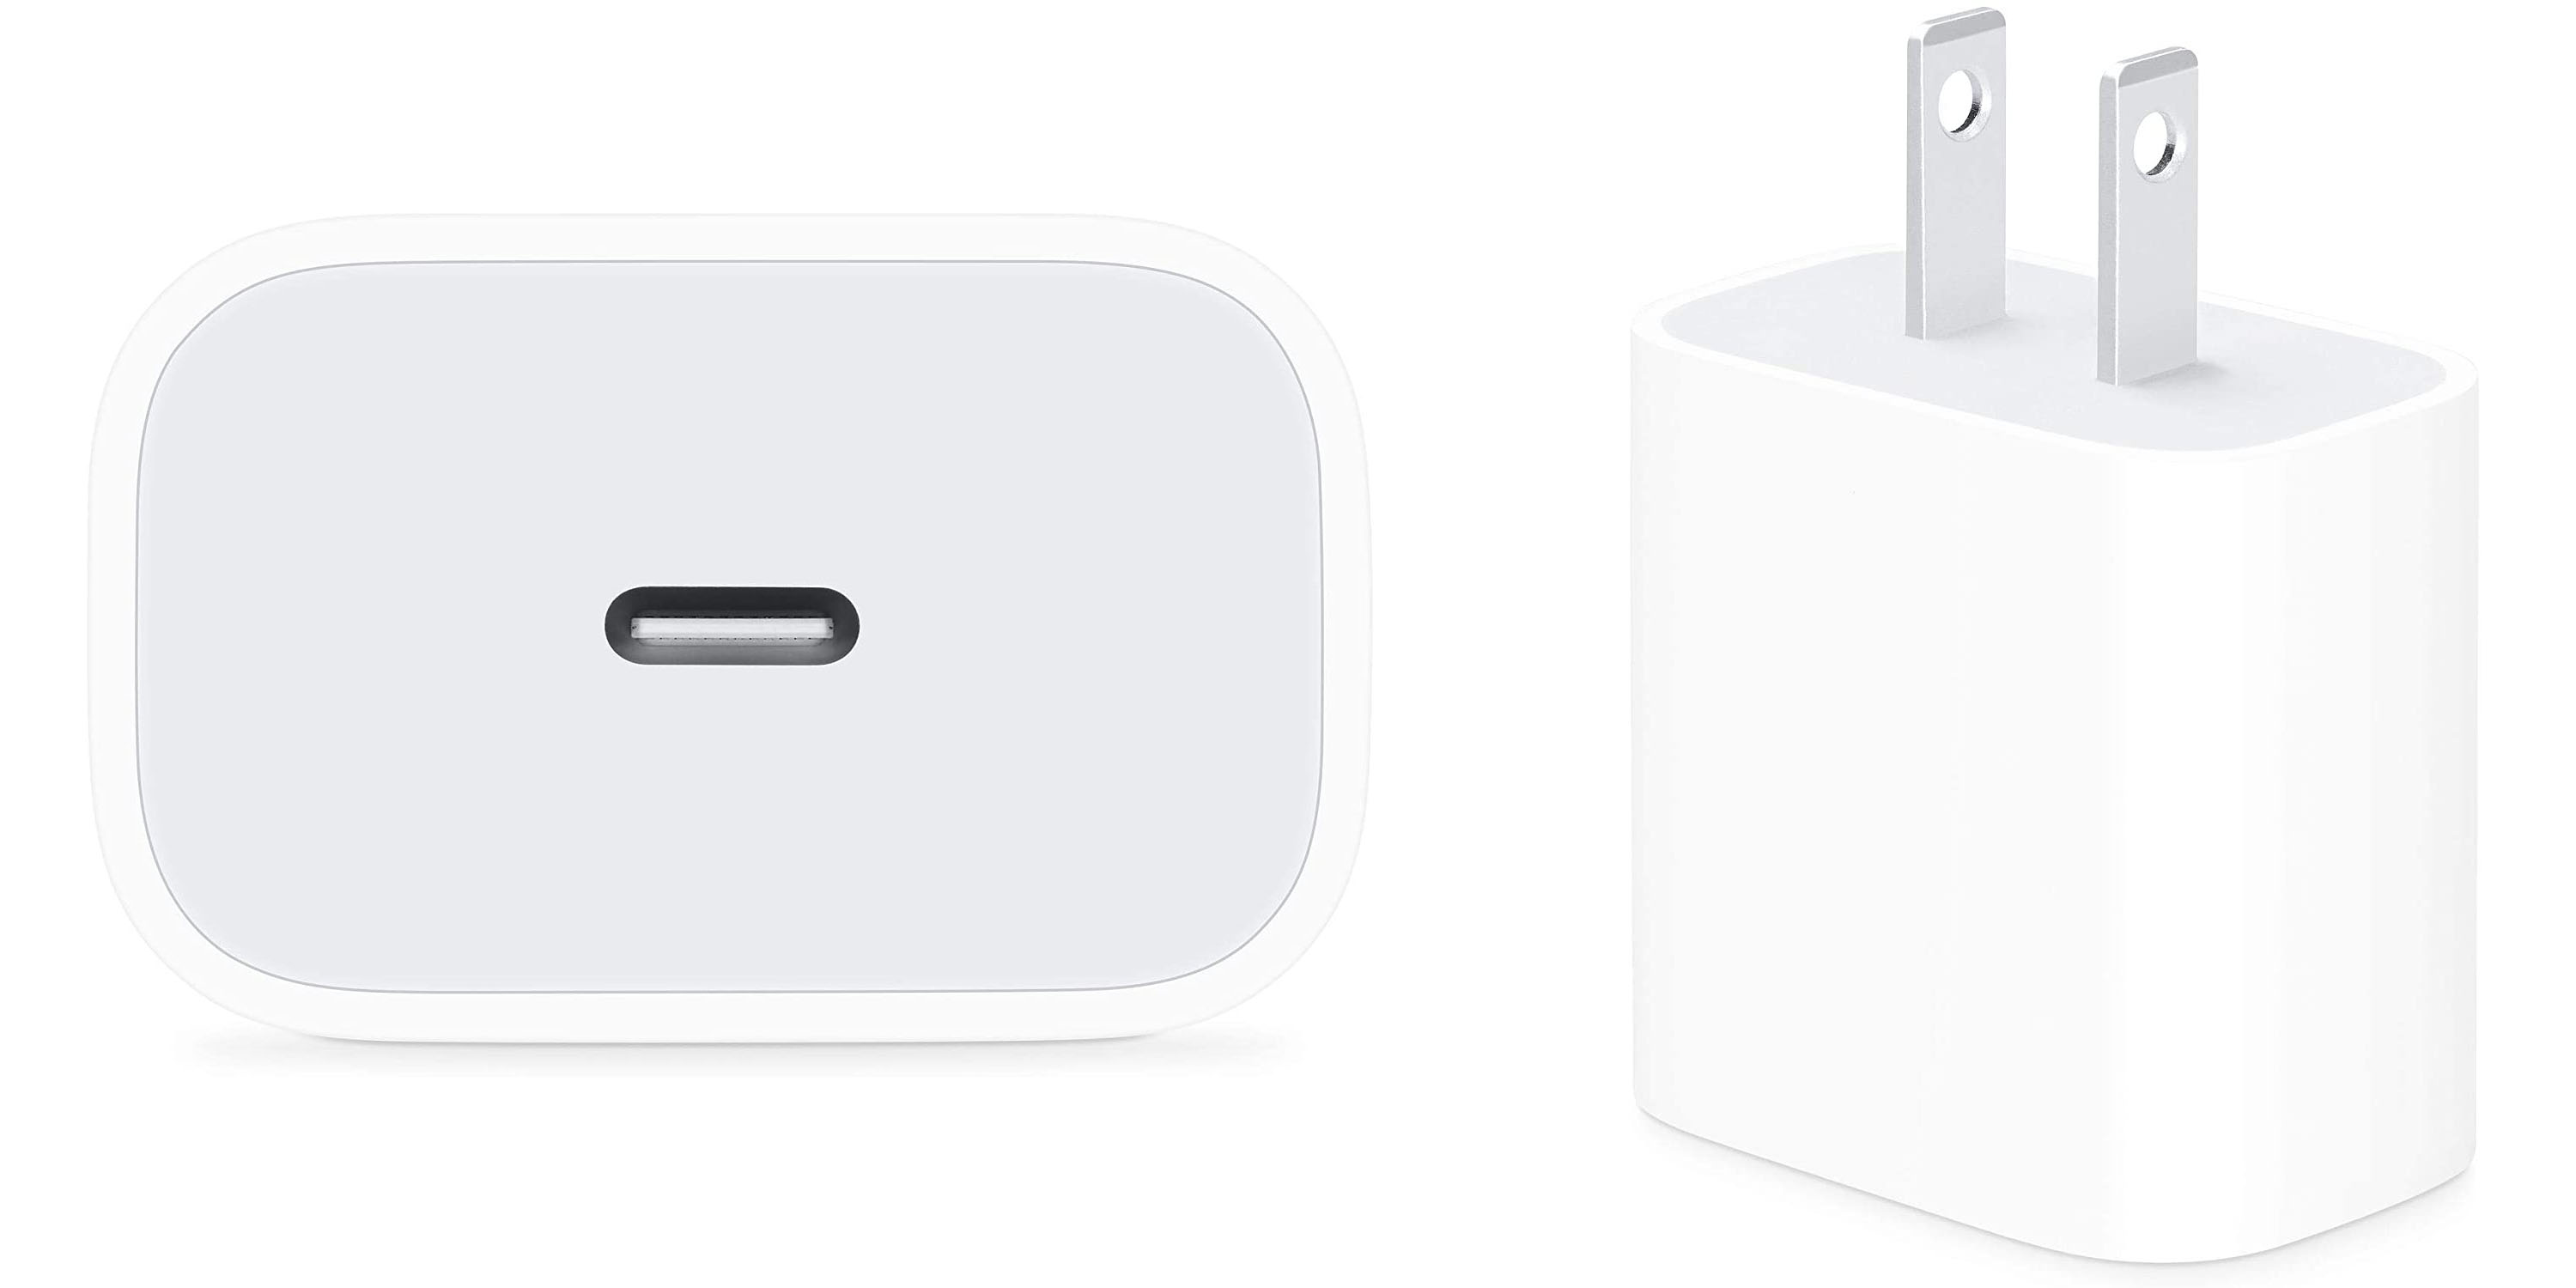 Uittreksel veld creëren Apple's USB-C chargers: Understanding the oddities - 9to5Mac